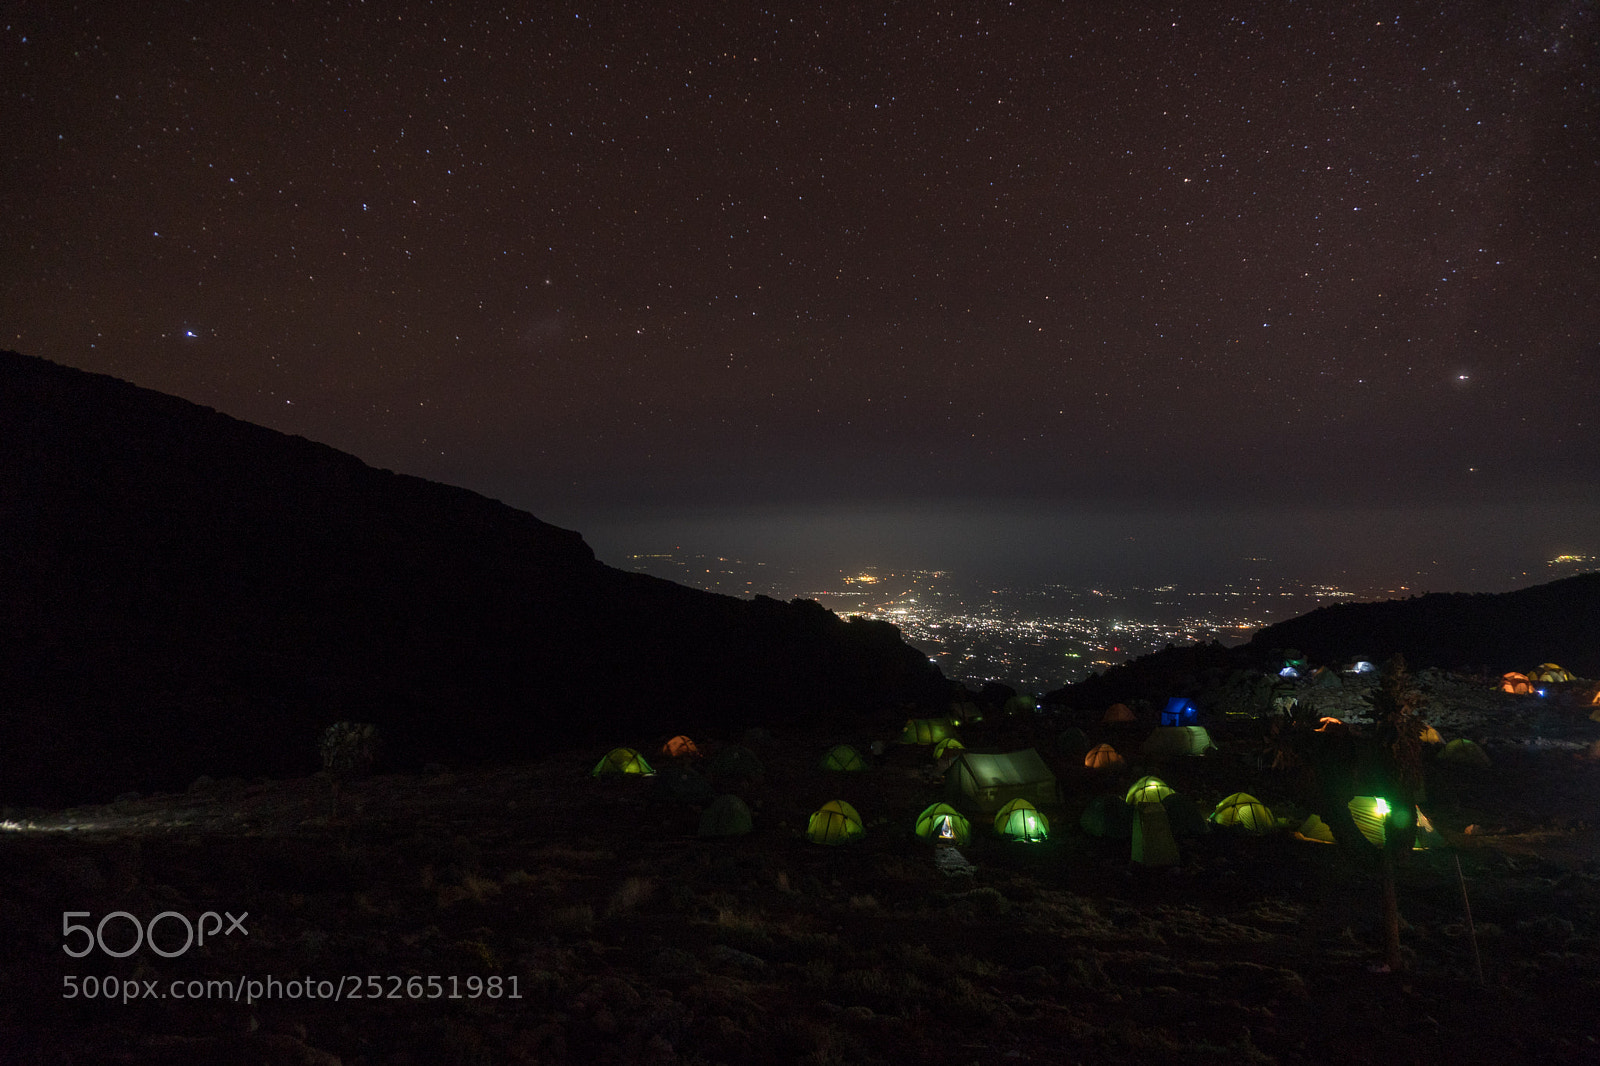 Sony a6300 sample photo. Camping at kilimanjaro photography